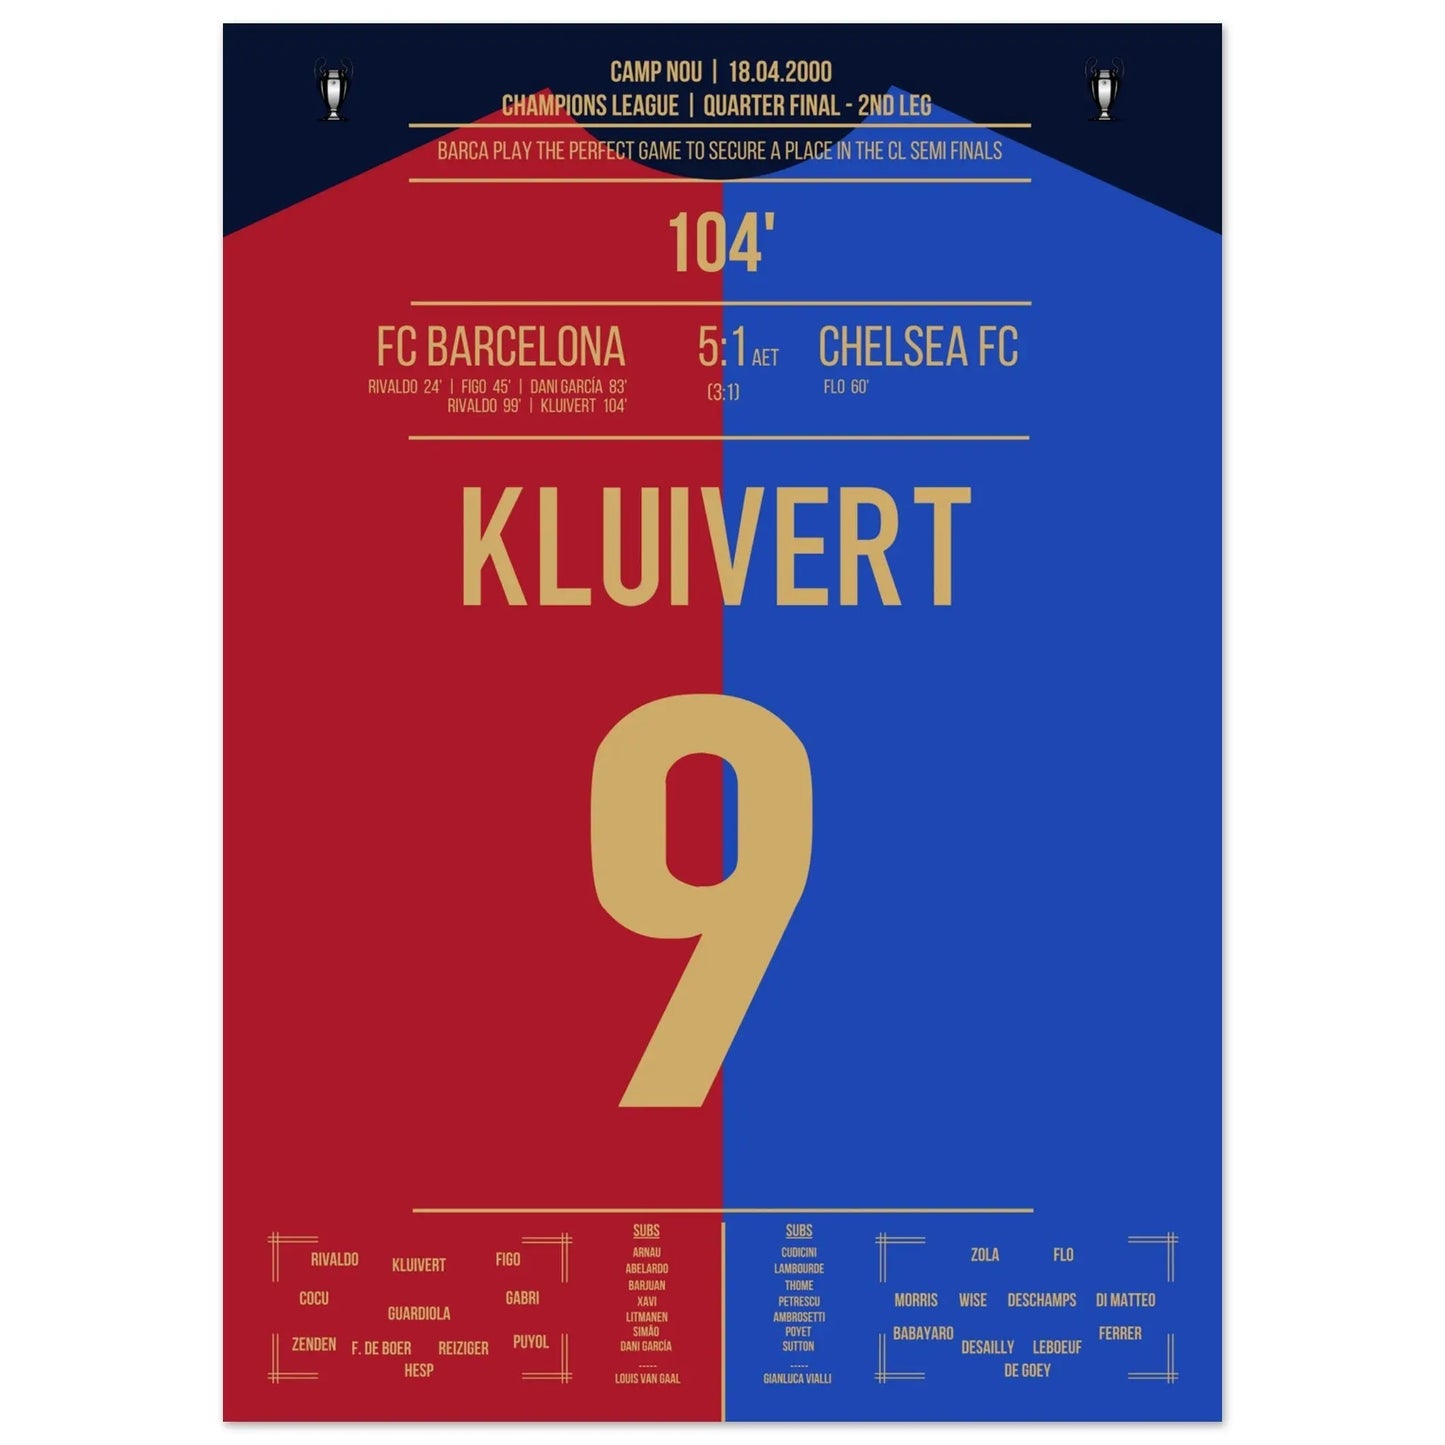 Kluivert's Tor in Barca's "Remontada" gegen Chelsea in 2000 50x70-cm-20x28-Ohne-Rahmen